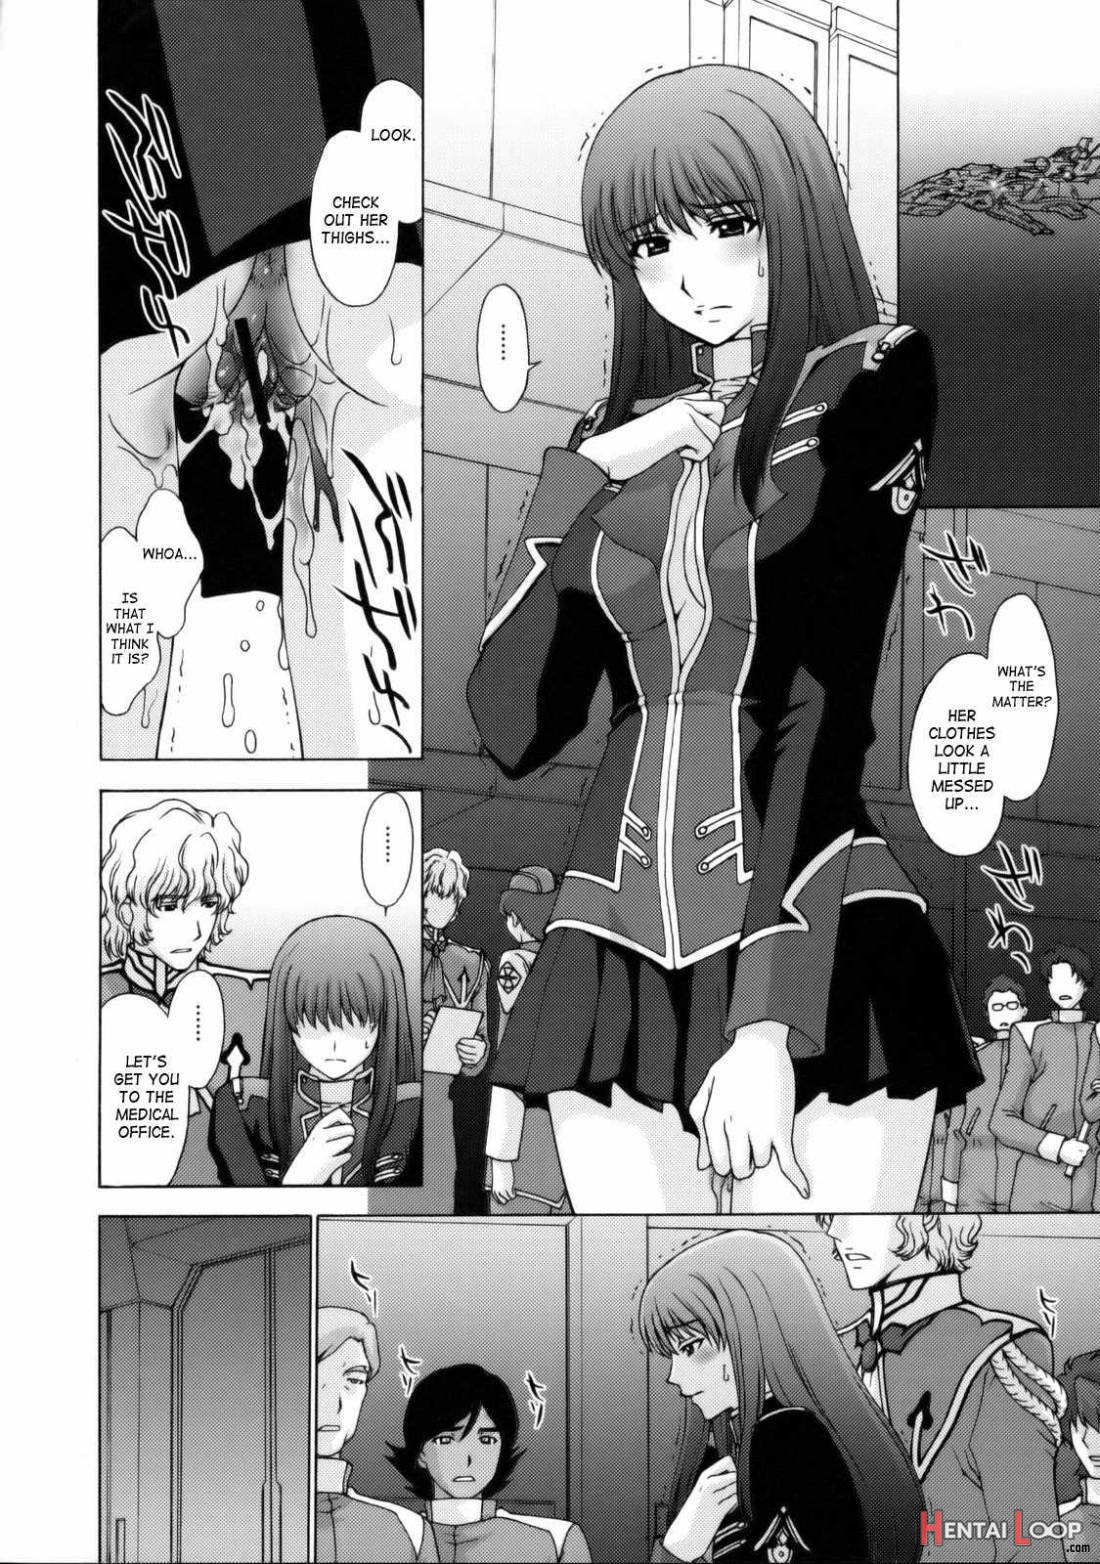 Zetsubou no Genkai page 3